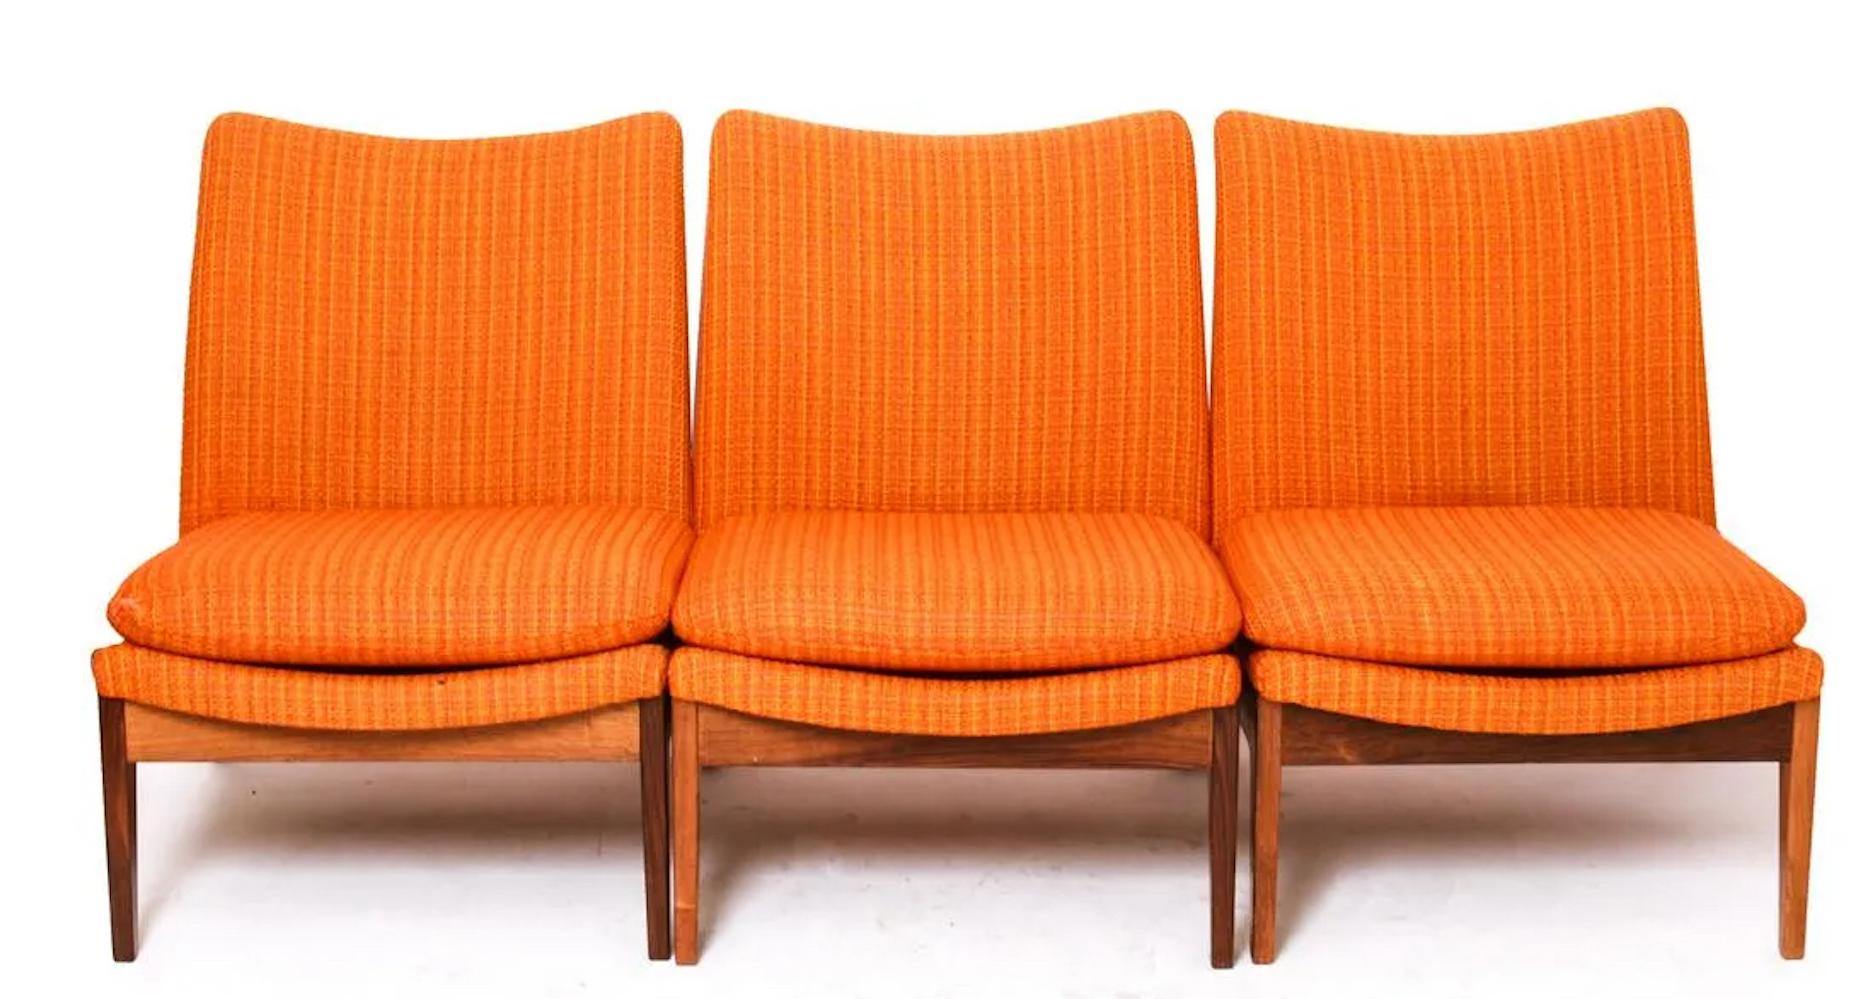 Scandinavian Modern Finn Juhl for Cado Modular Sofa Lounge Armchairs 1950s, Danish Modern For Sale